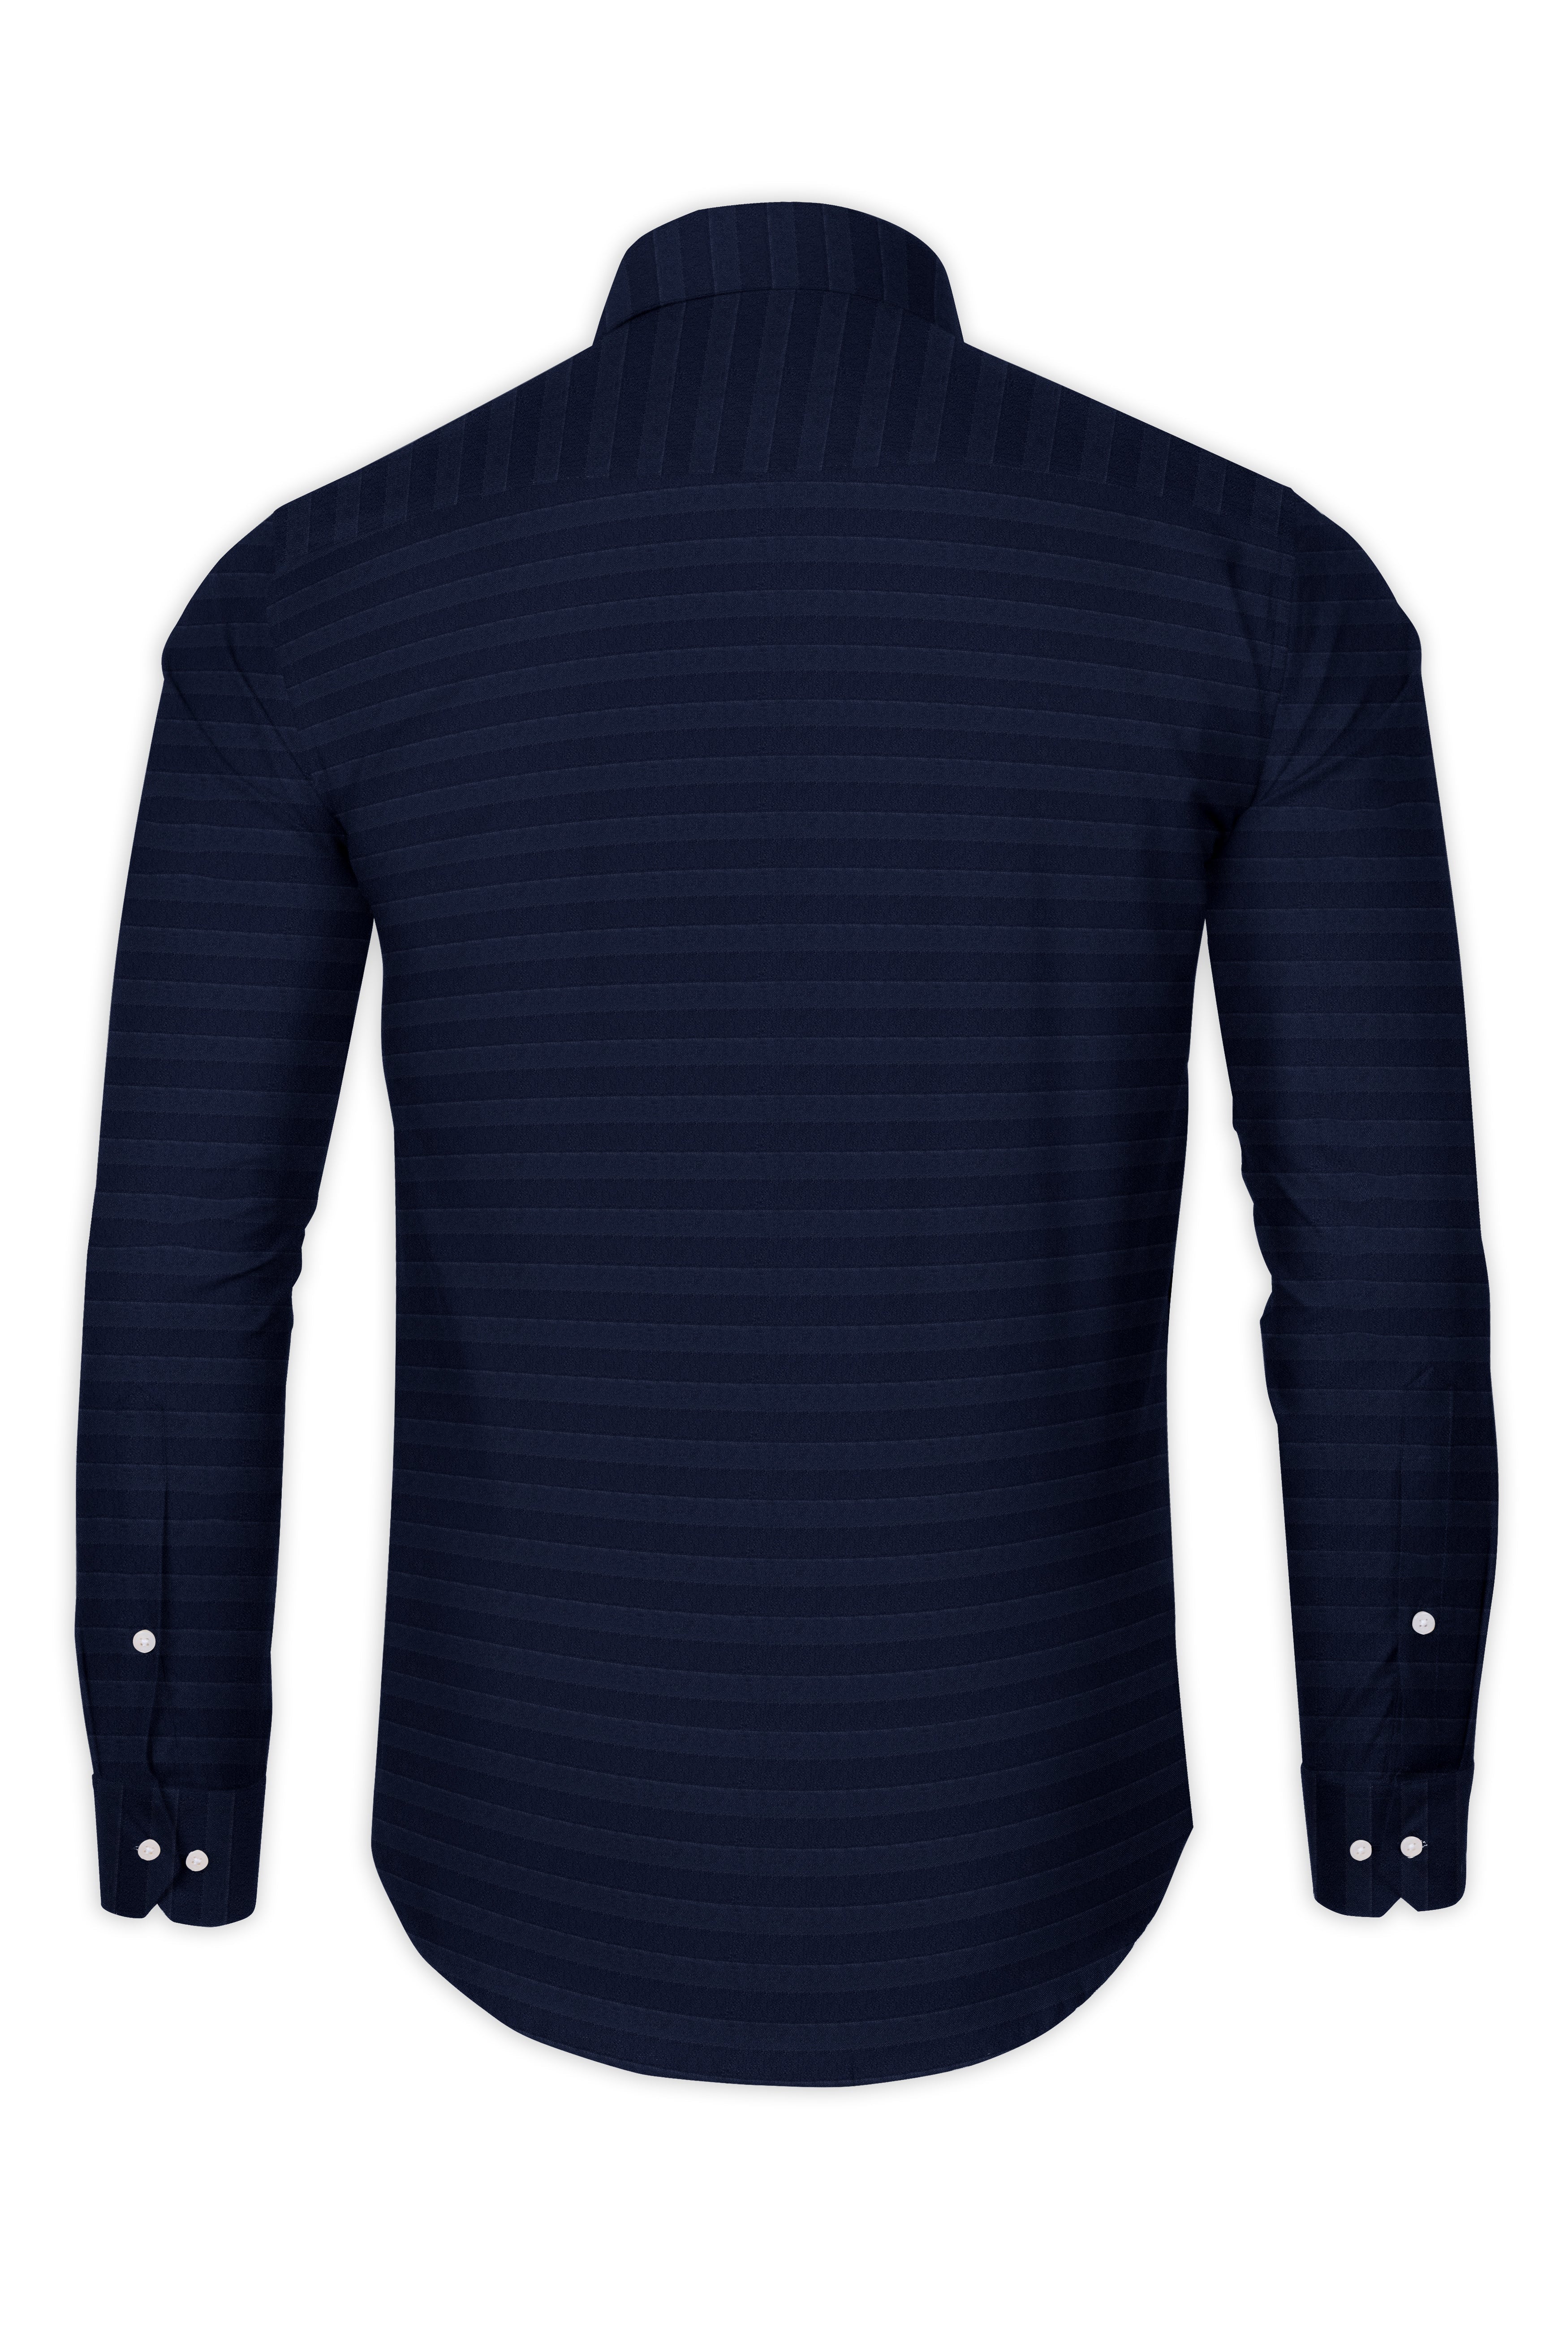 Mirage Blue horizontal striped Dobby Textured Premium Giza Cotton Shirt